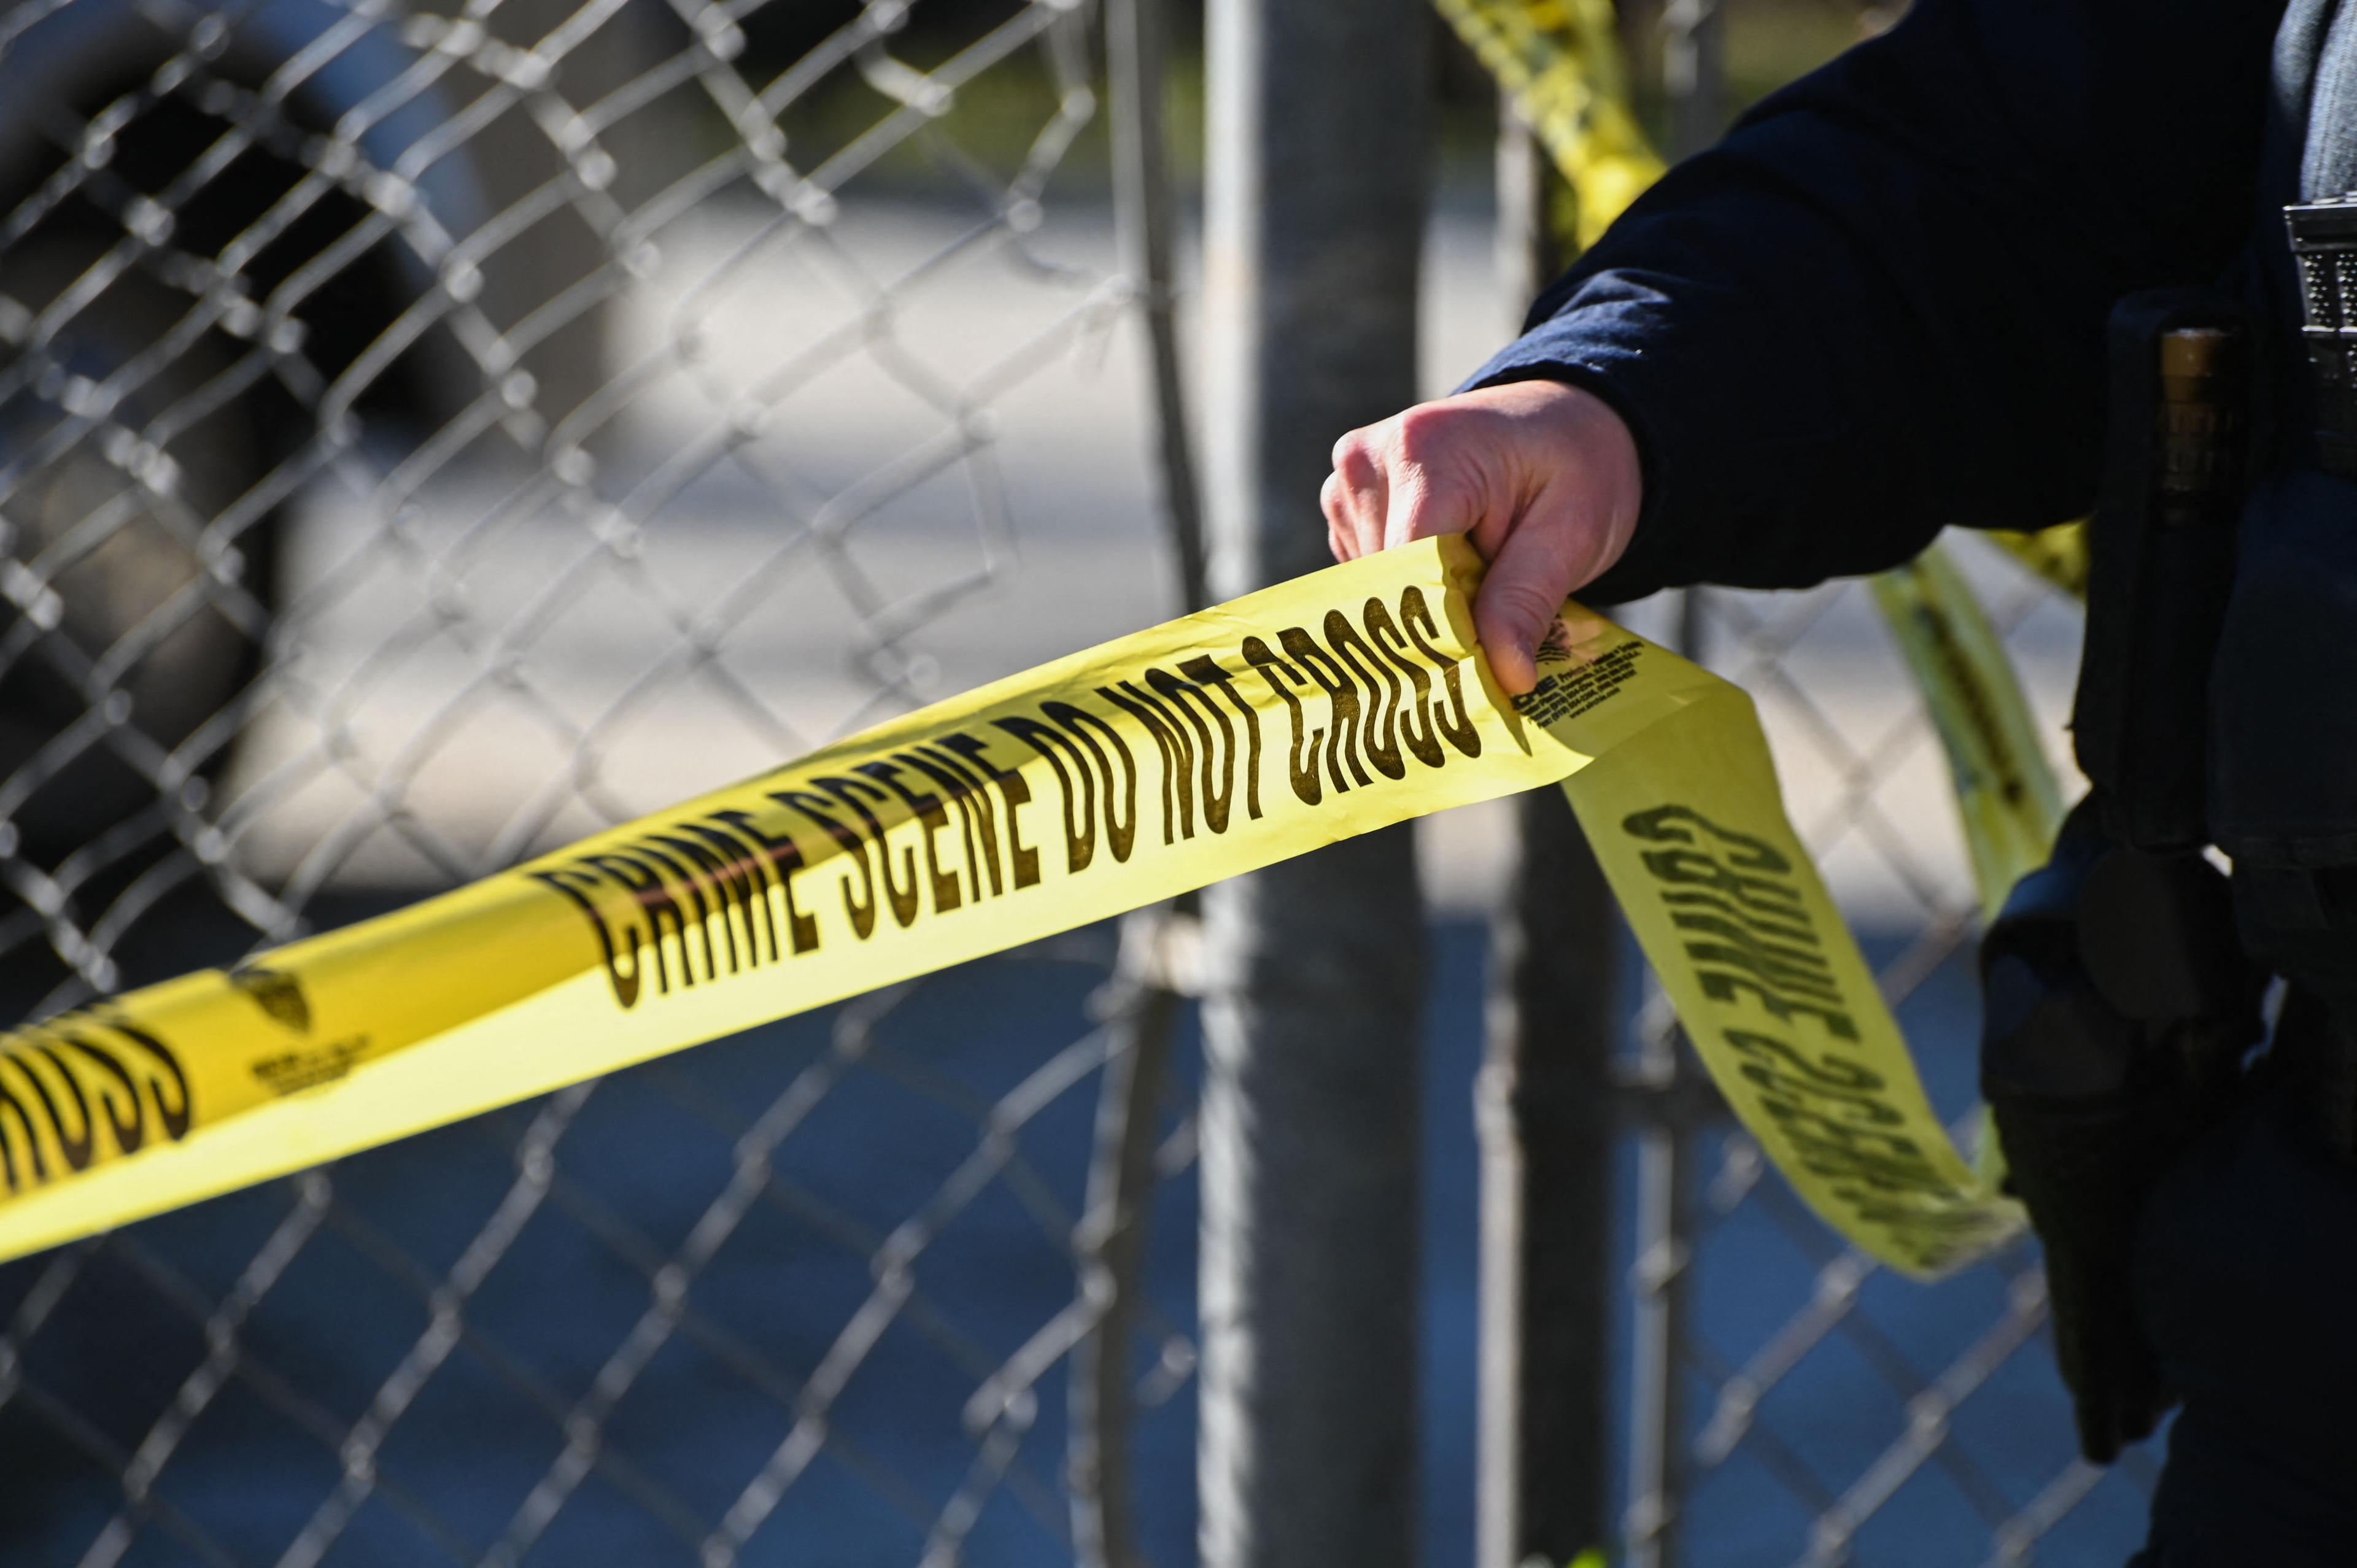 Woman’s Body Found Near Shopping Center in Santa Clarita